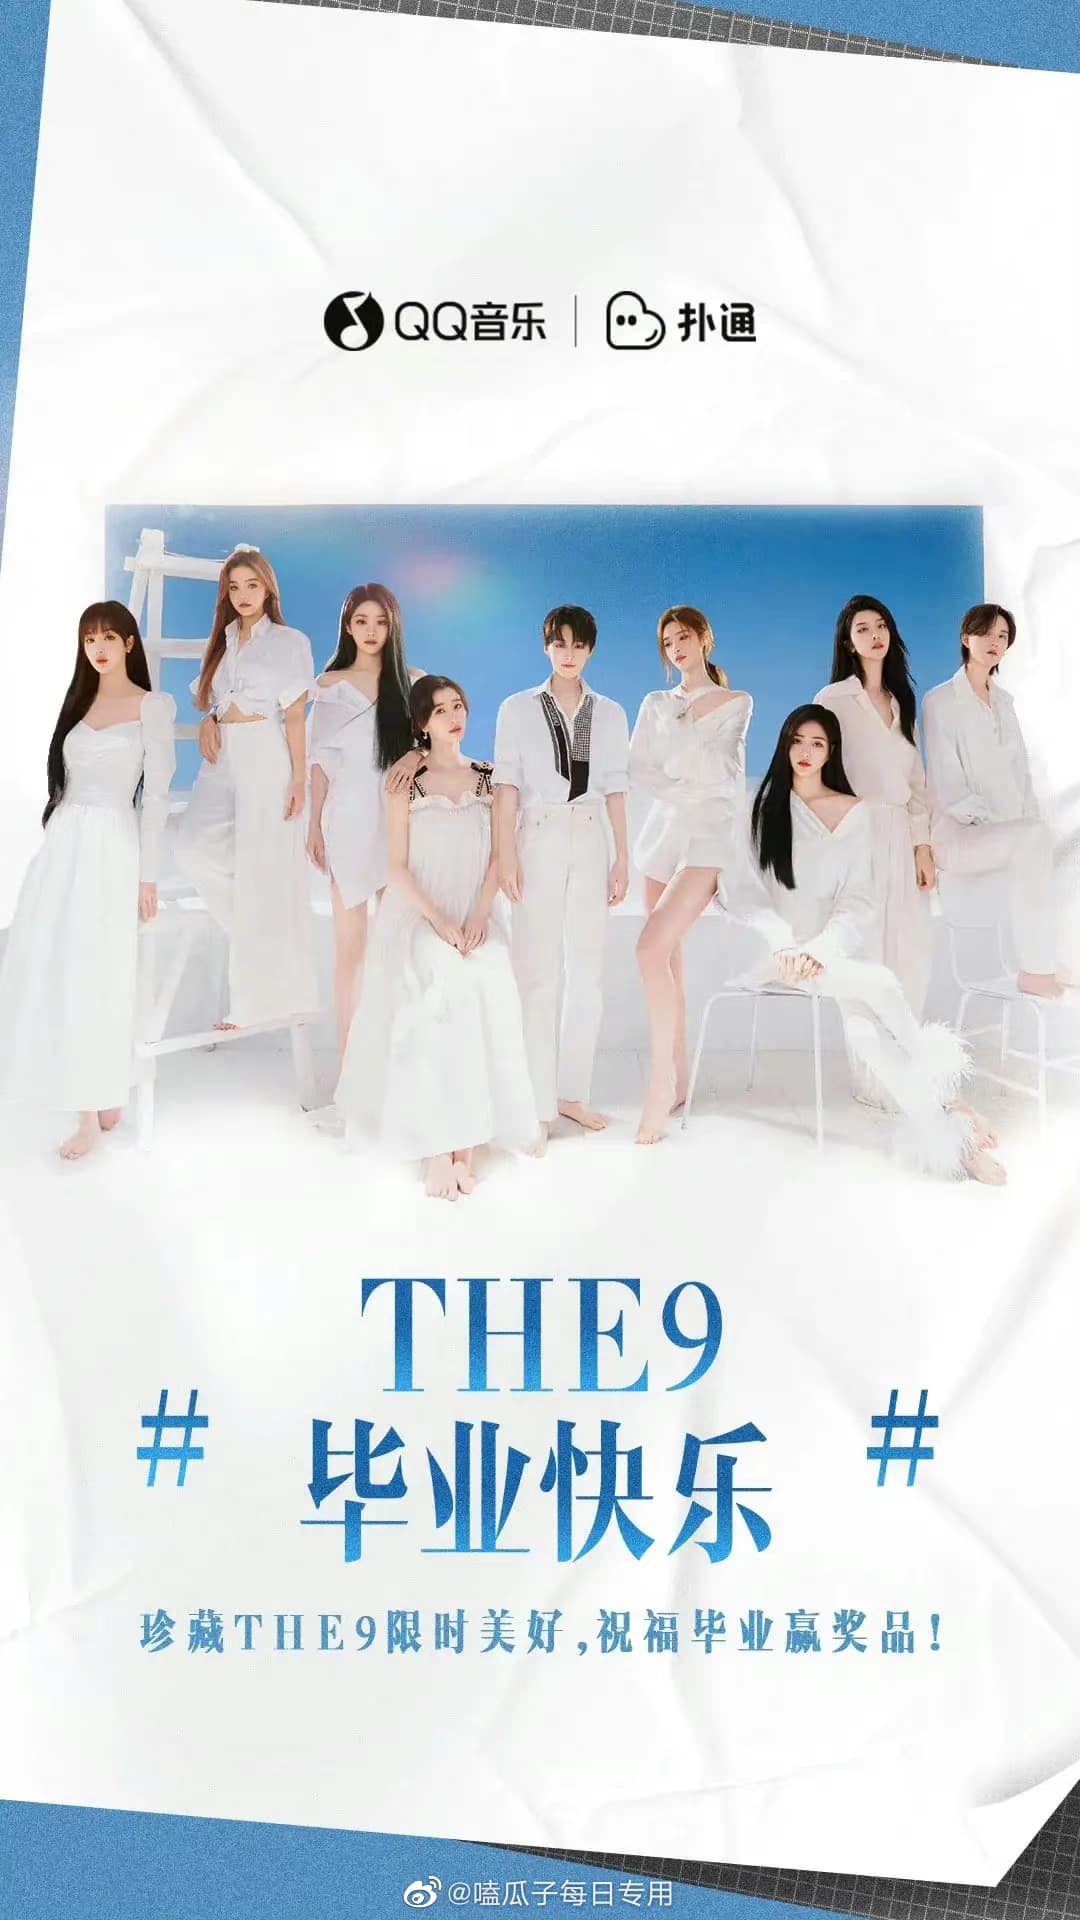 THE9 debut với 9 cô gái tài năng (Nguồn: Internet)